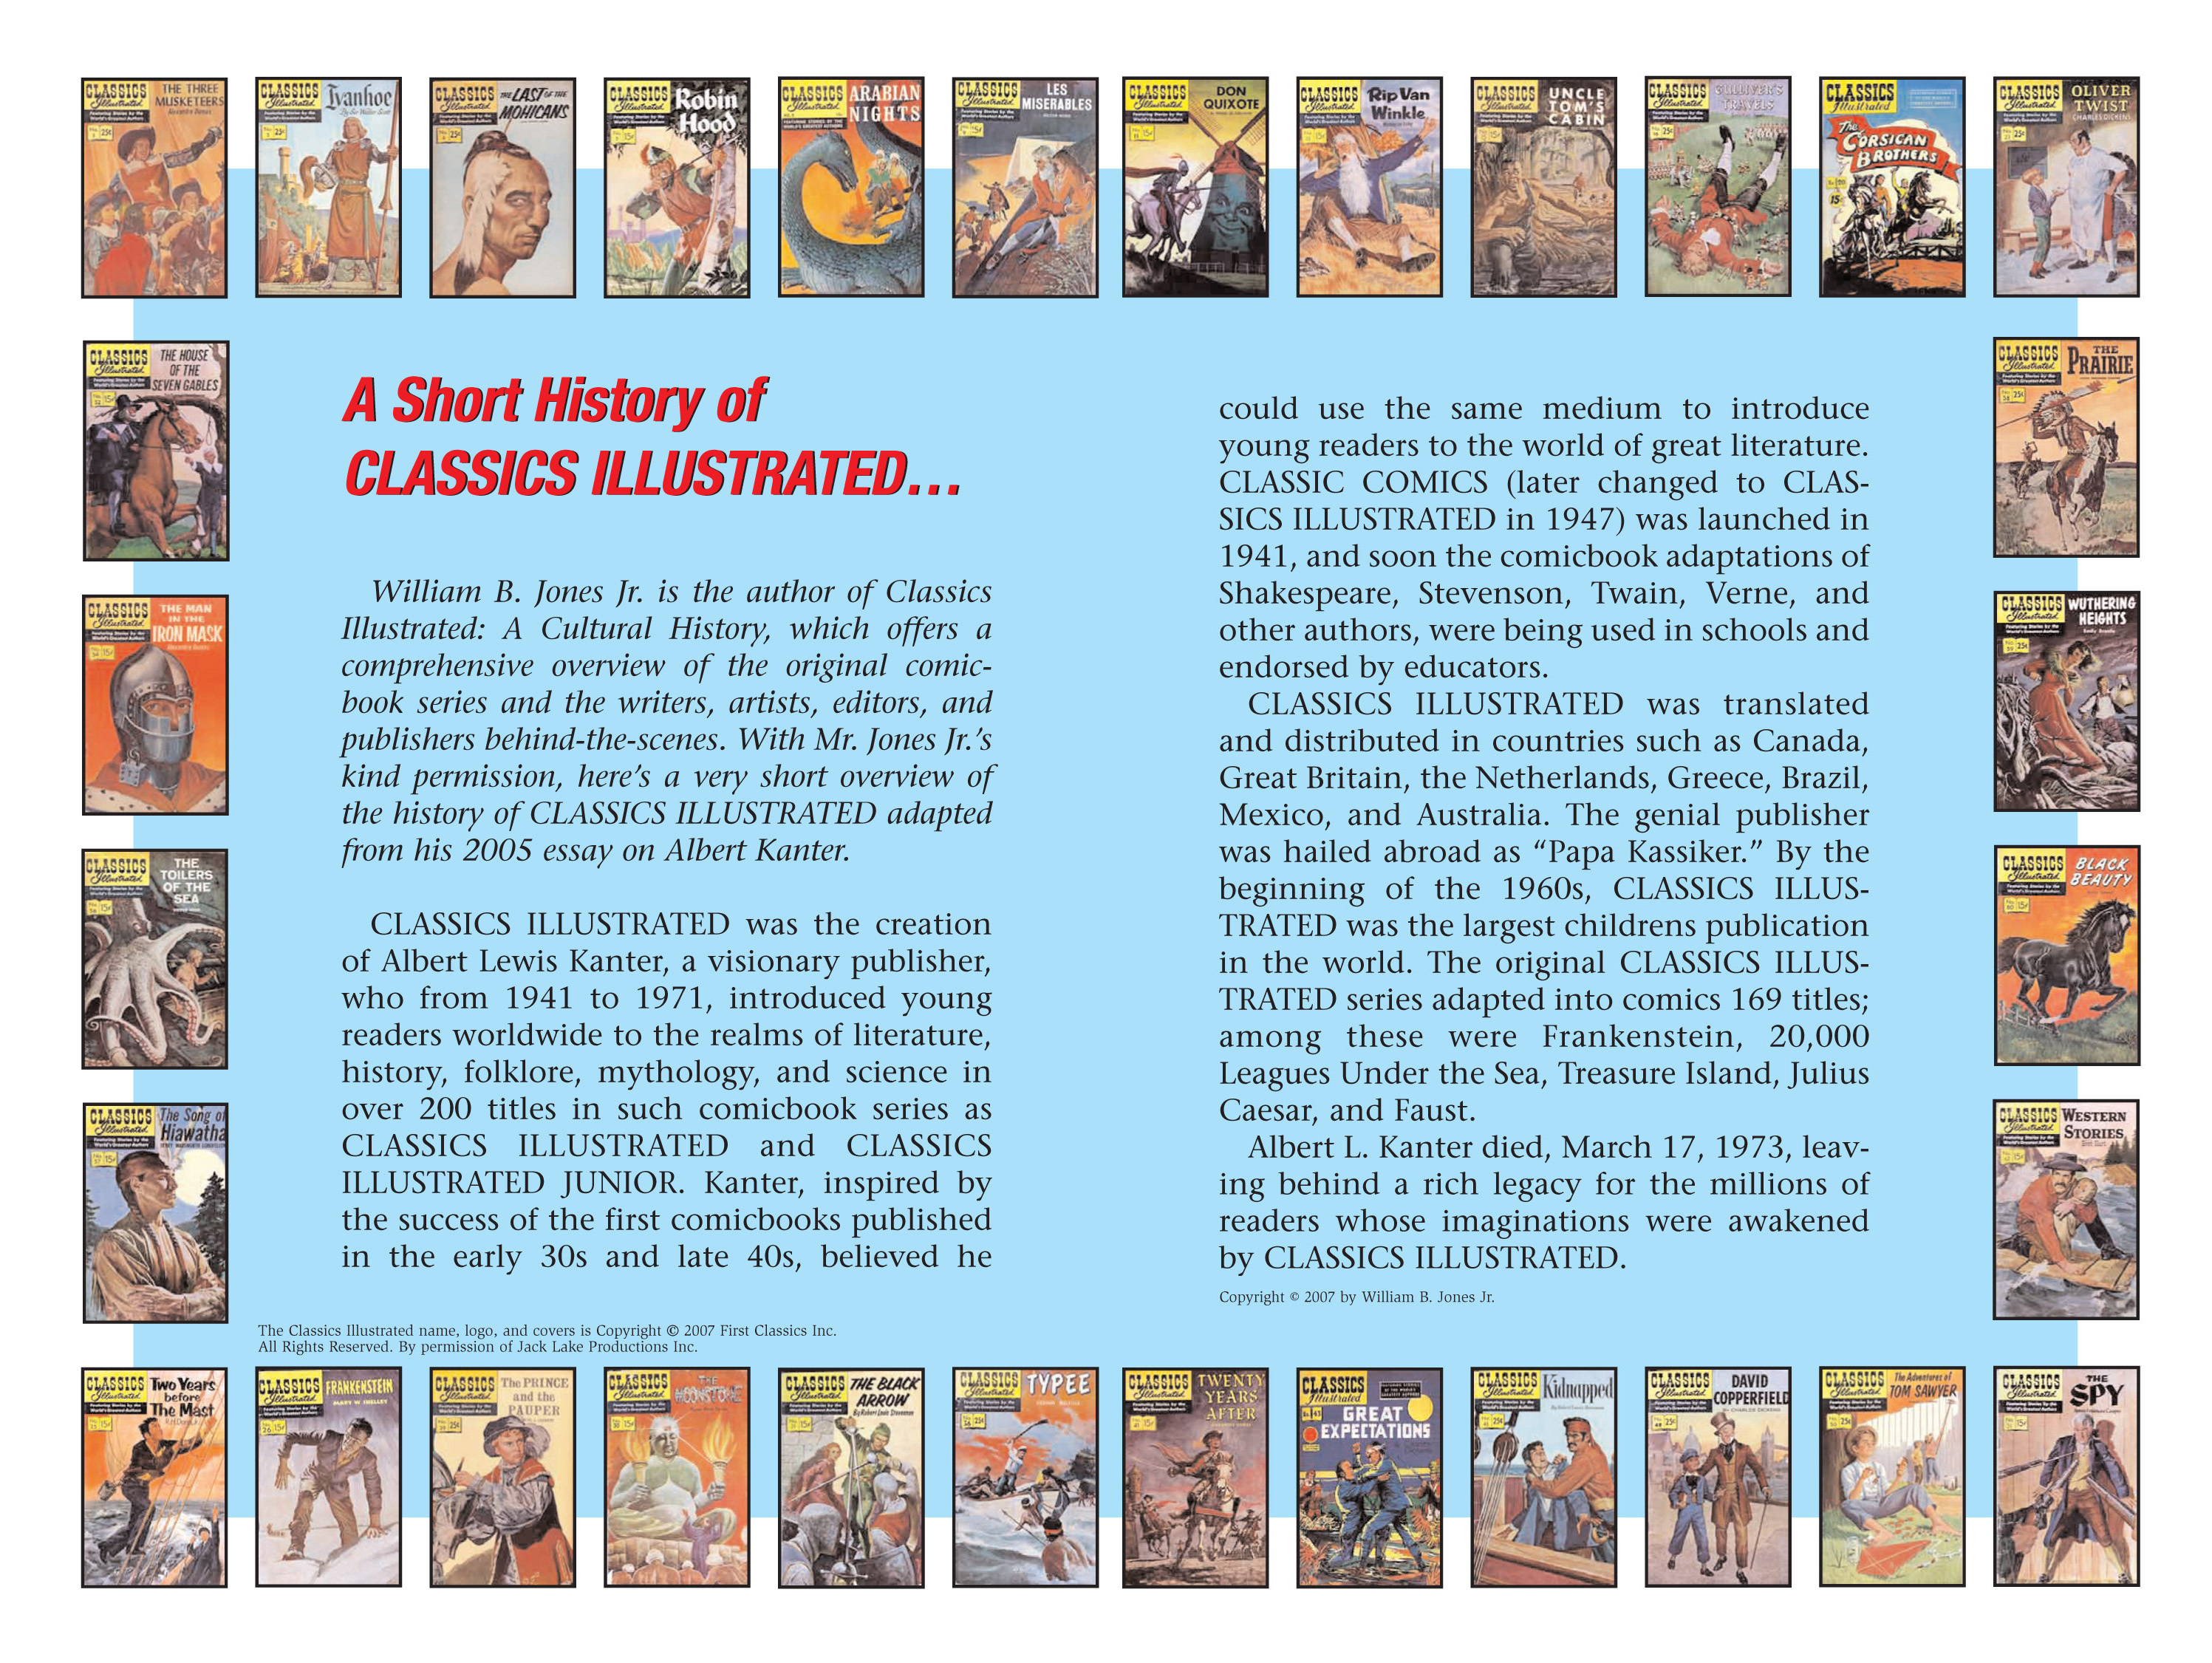 Read online Nancy Drew comic -  Issue #9 - 100